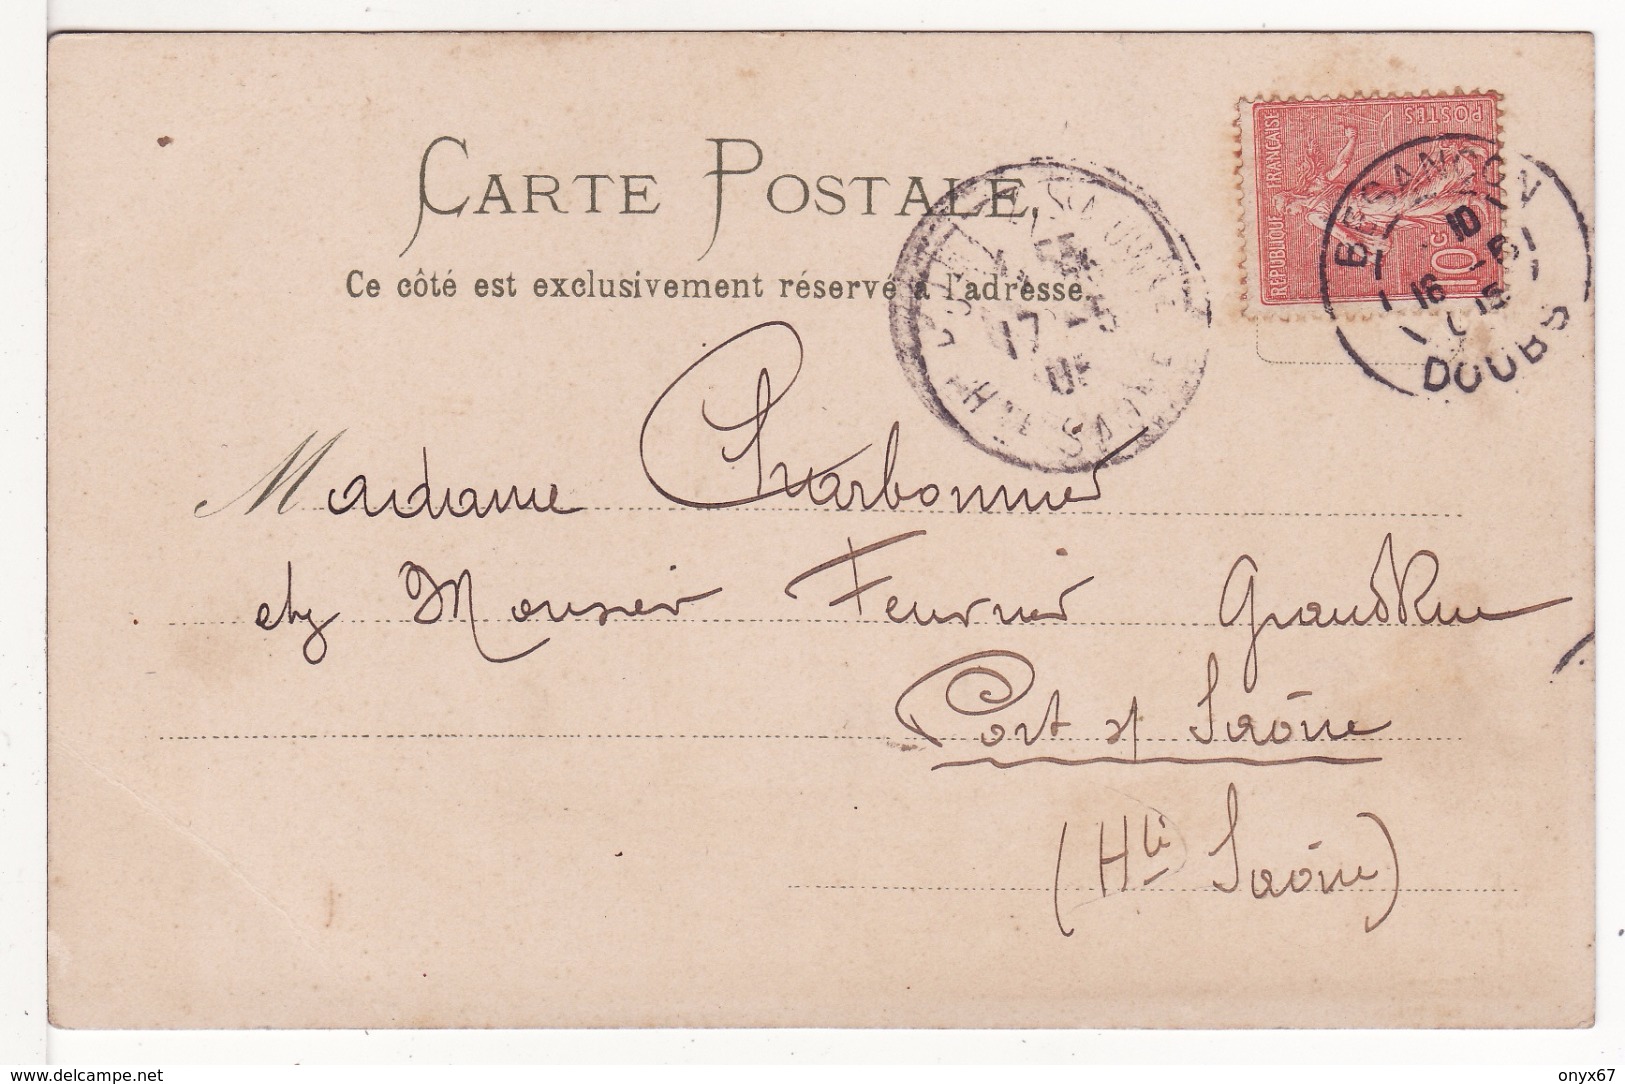 Carte Postale Fantaisie C.KLEIN  - FLEUR MARGUERITE  - Illustrateur - VOIR 2 SCANS - - Klein, Catharina